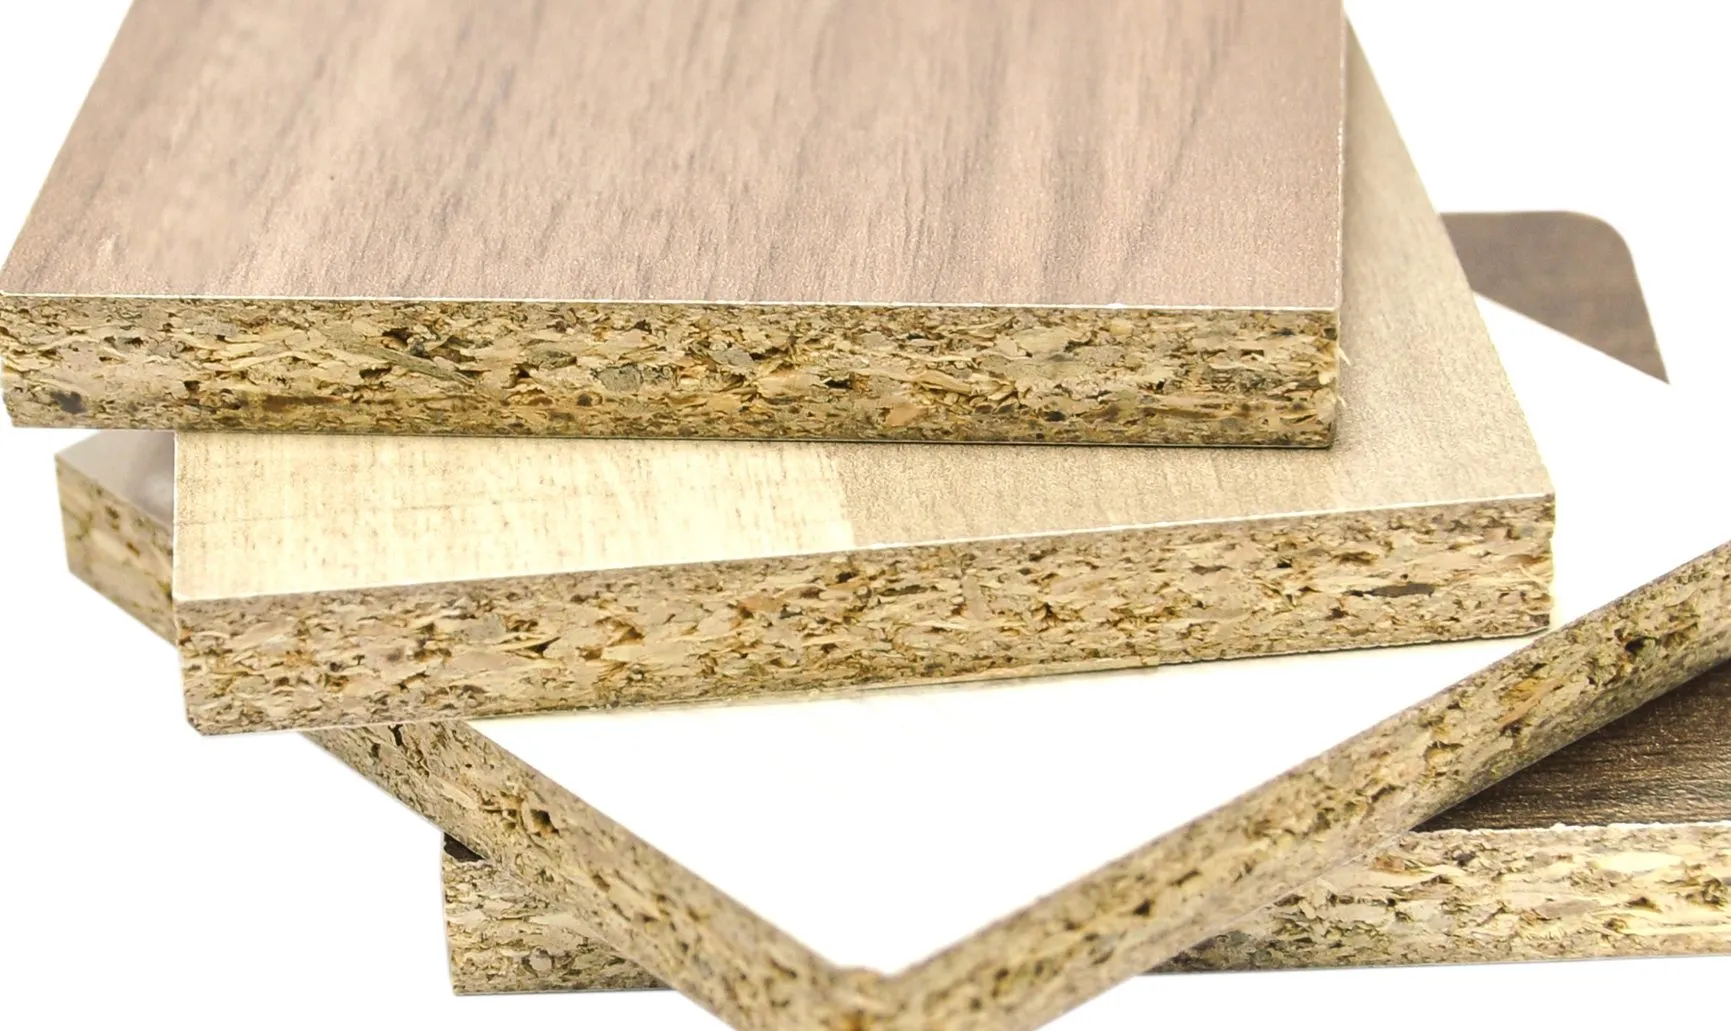 Mẫu cửa gỗ 4 cánh mặt tiền đẹp từ gỗ công nghiệp có độ bền không cao bằng gỗ tự nhiên